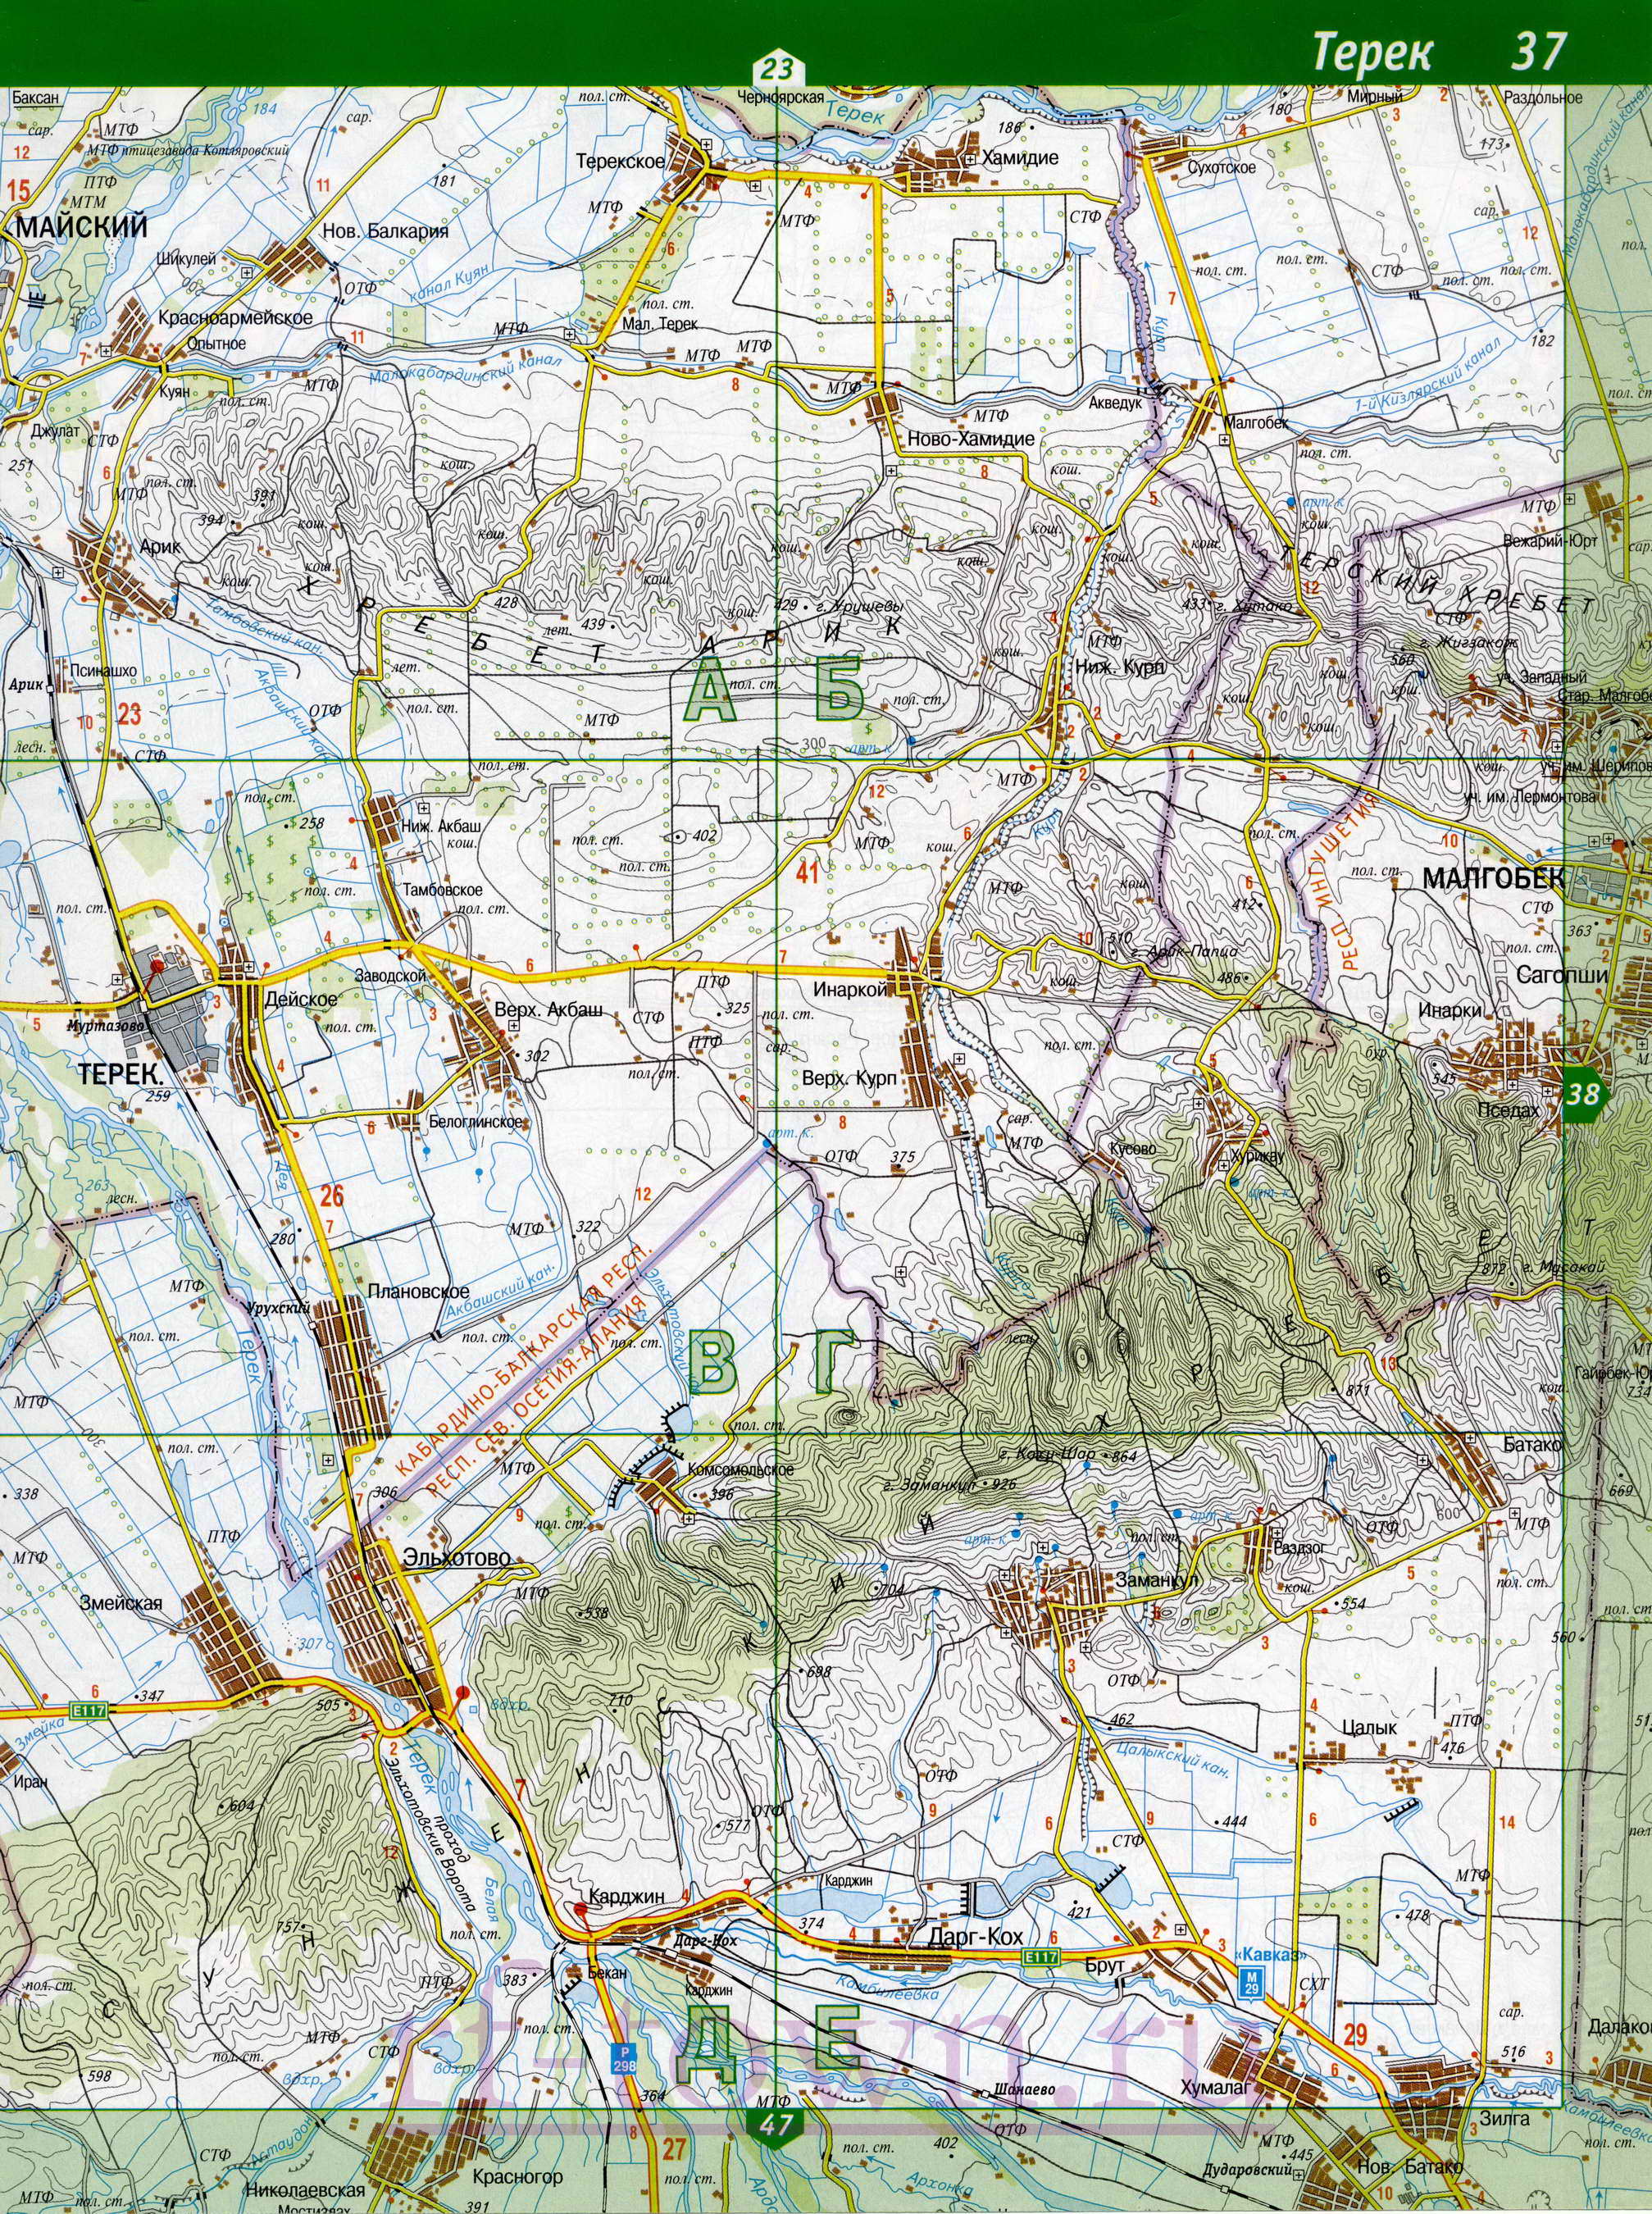 Карта Кабардино-Балкарии. Подробная топографическая карта Кабардино-Балкарии. Карта Кабардино-Балкарии масштаба 1см:2км, D1 - 